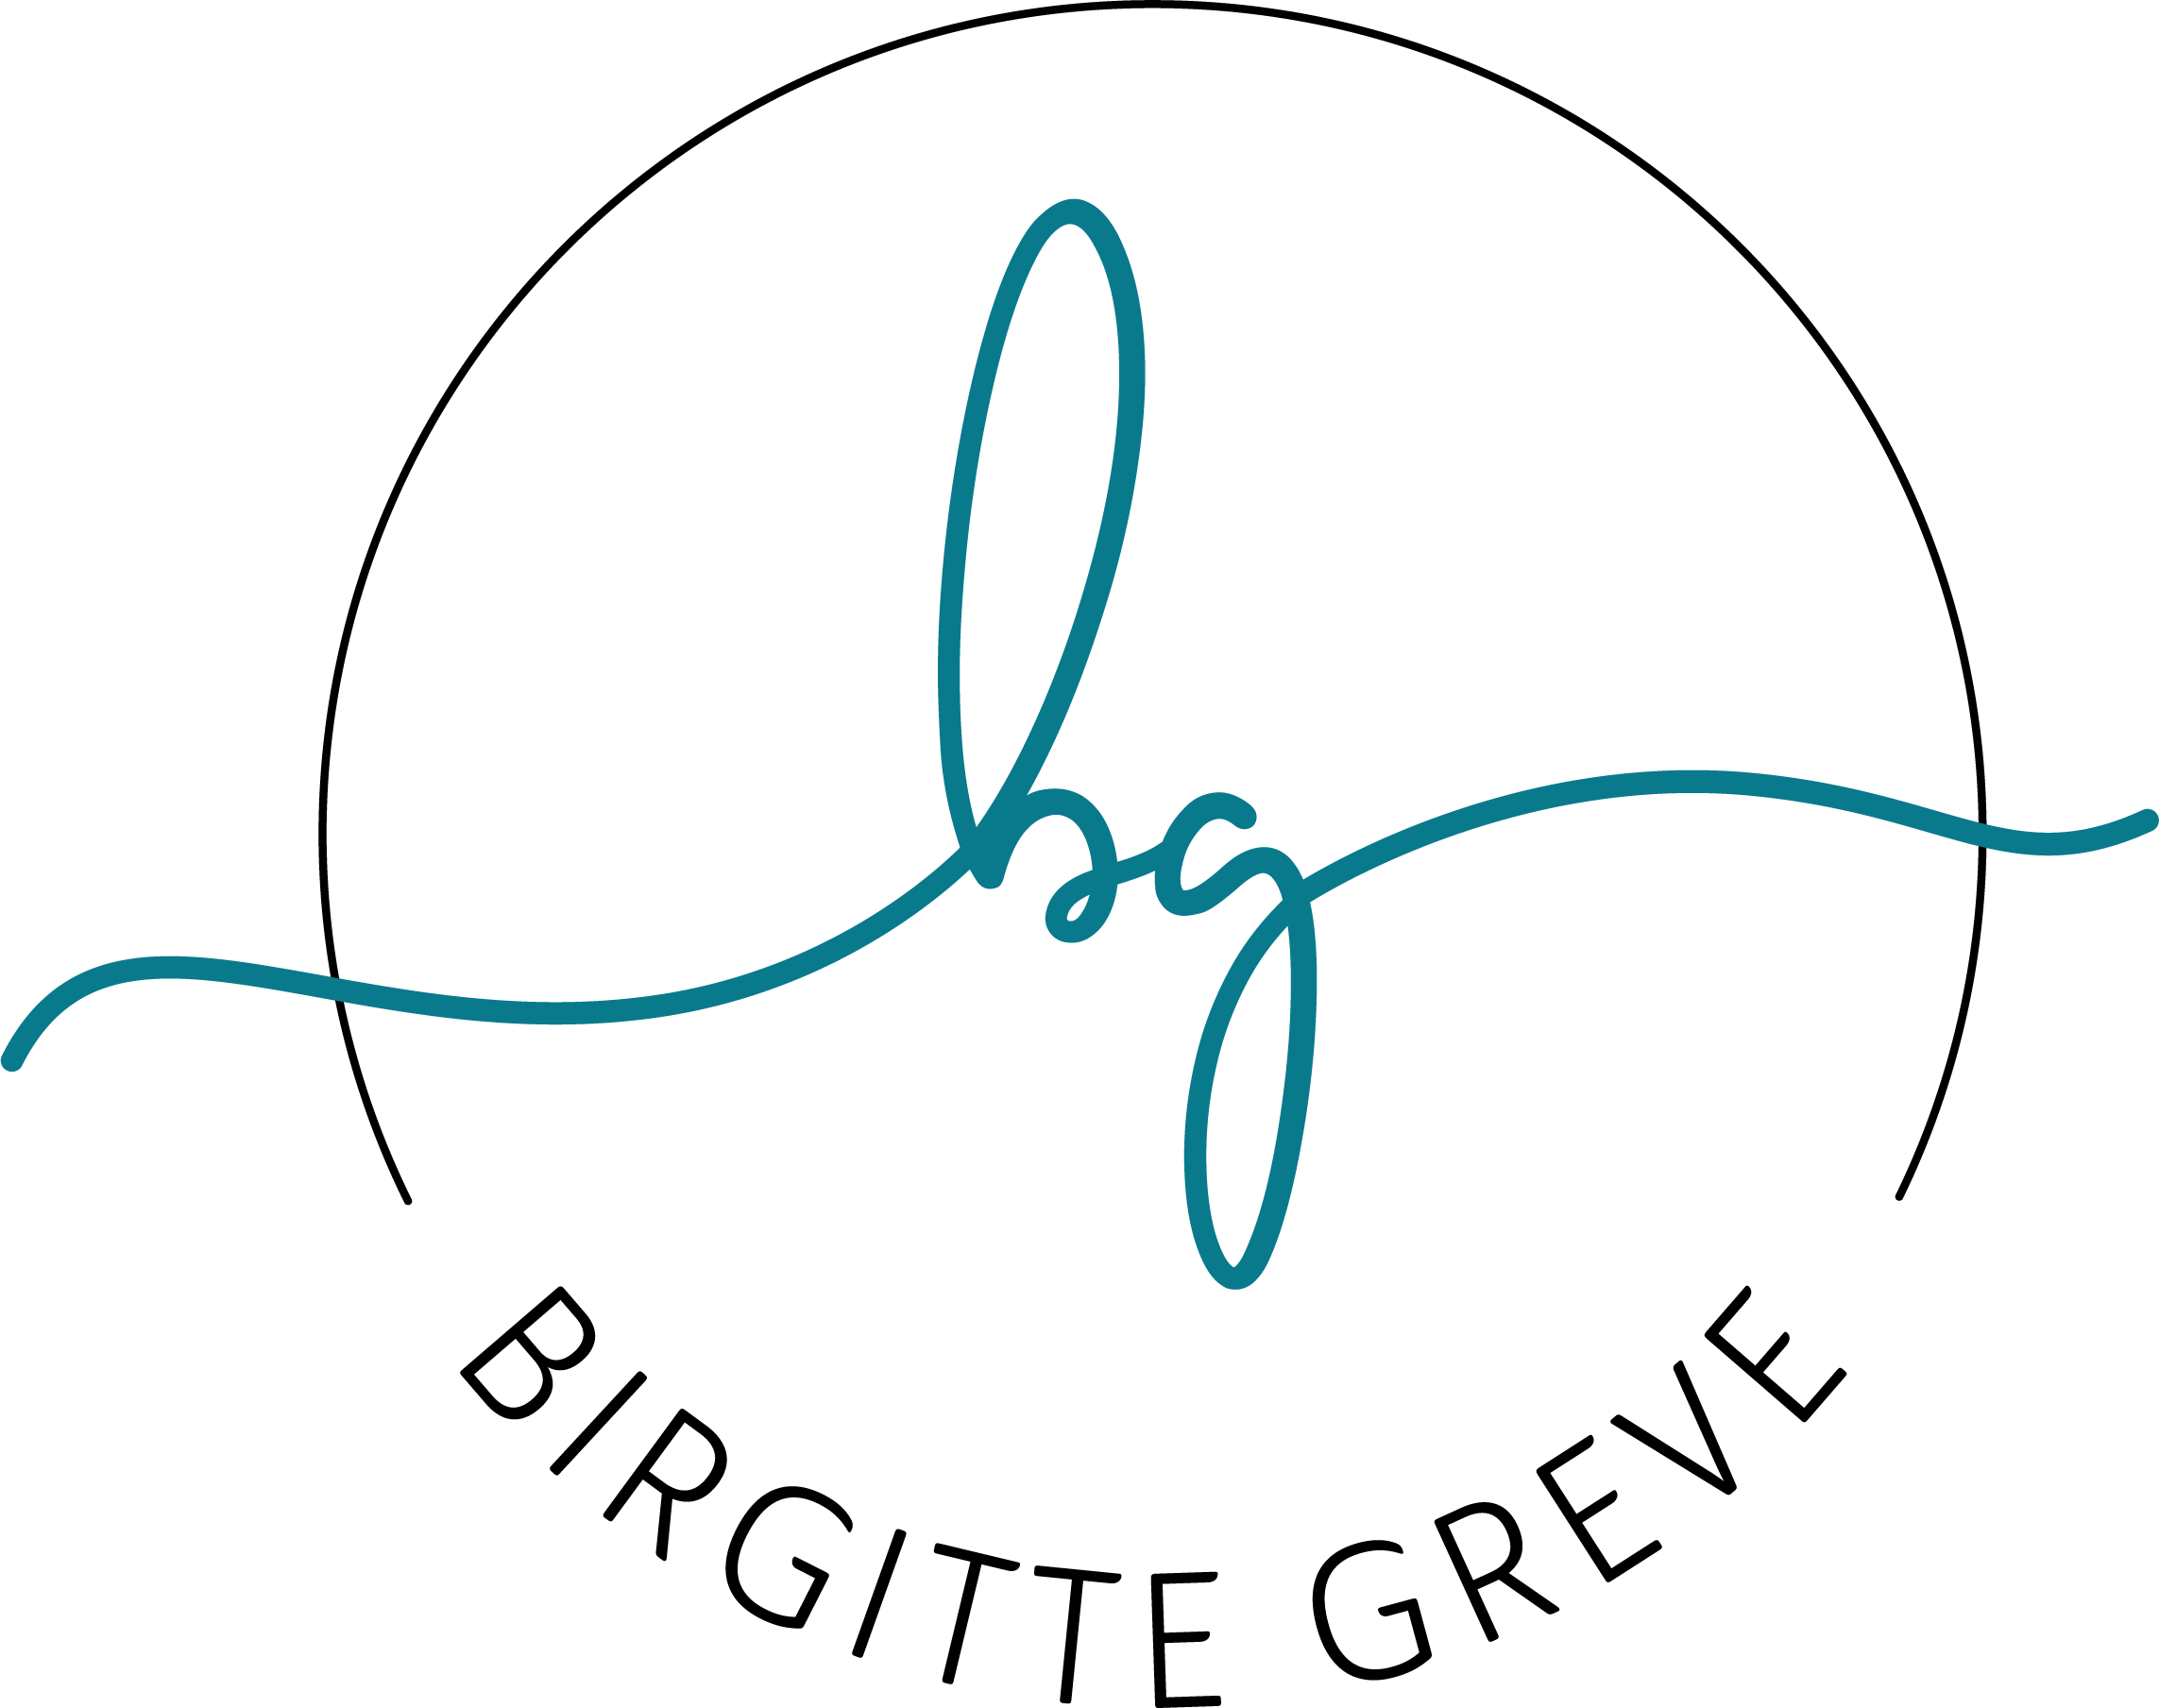 BIRGITTE GREVE ApS⎥Lederudvikling⎥Coaching⎥Rådgivning⎥Mediation